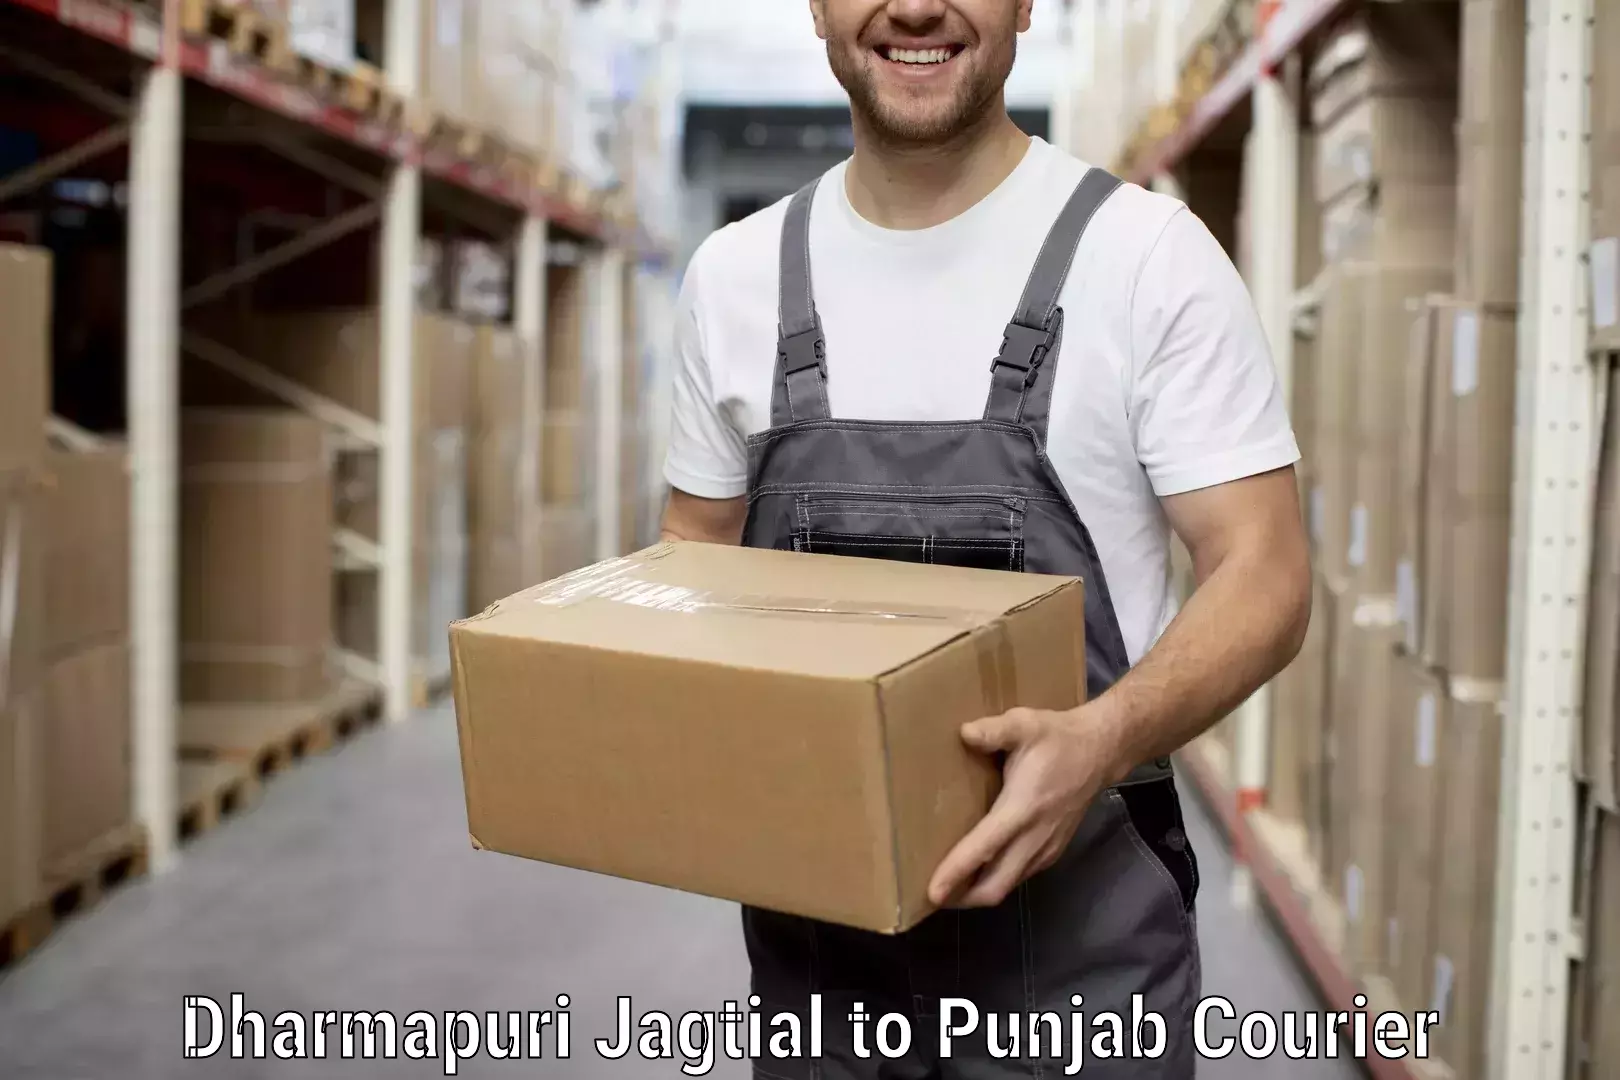 Door-to-door relocation services Dharmapuri Jagtial to Punjab